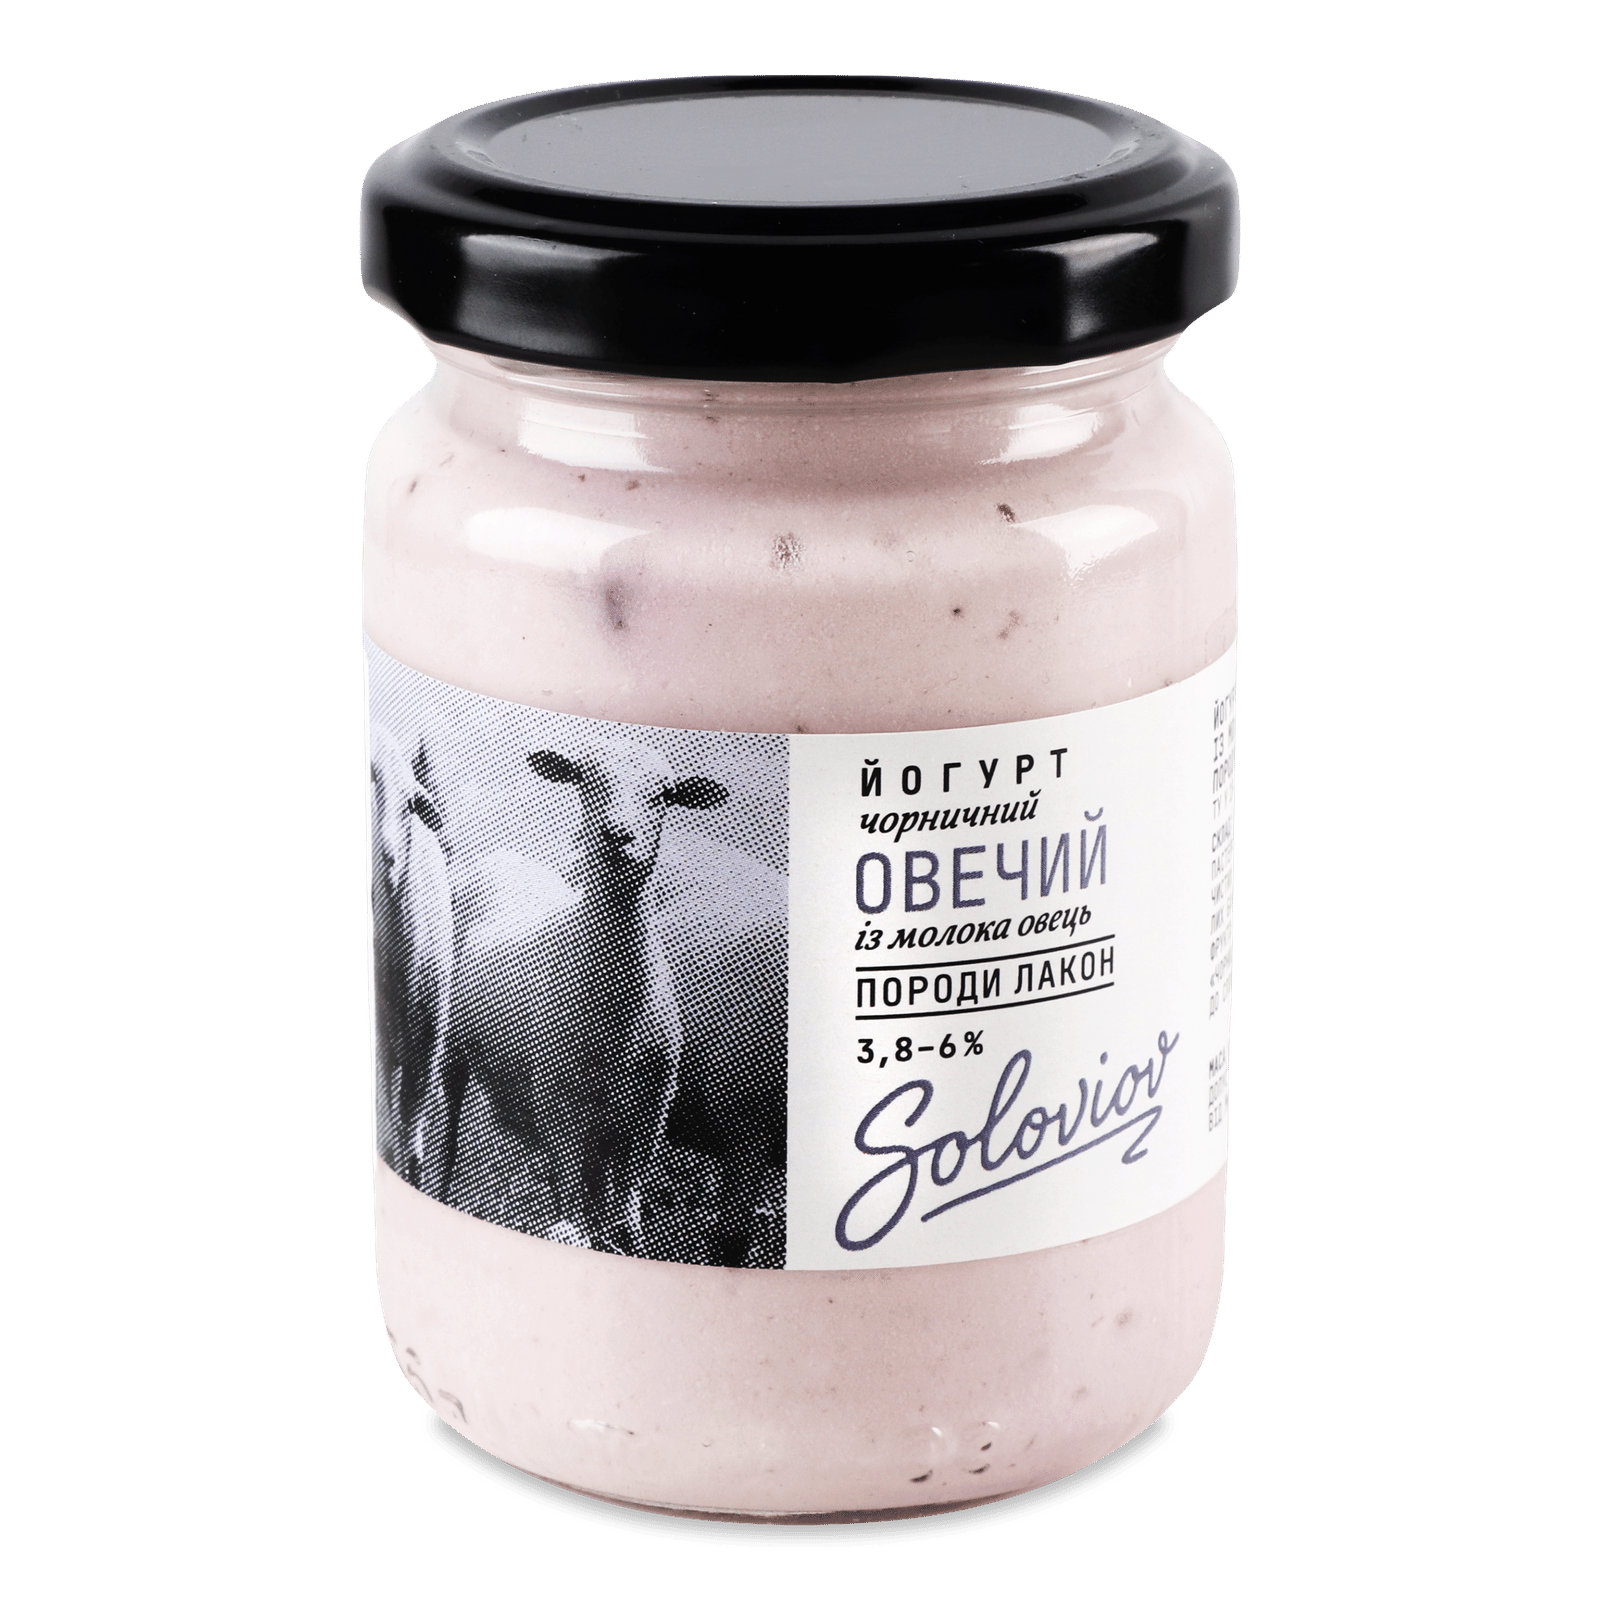 Йогурт «Лавка традицій» Soloviov Овечий чорничний 3,8-6% - 1